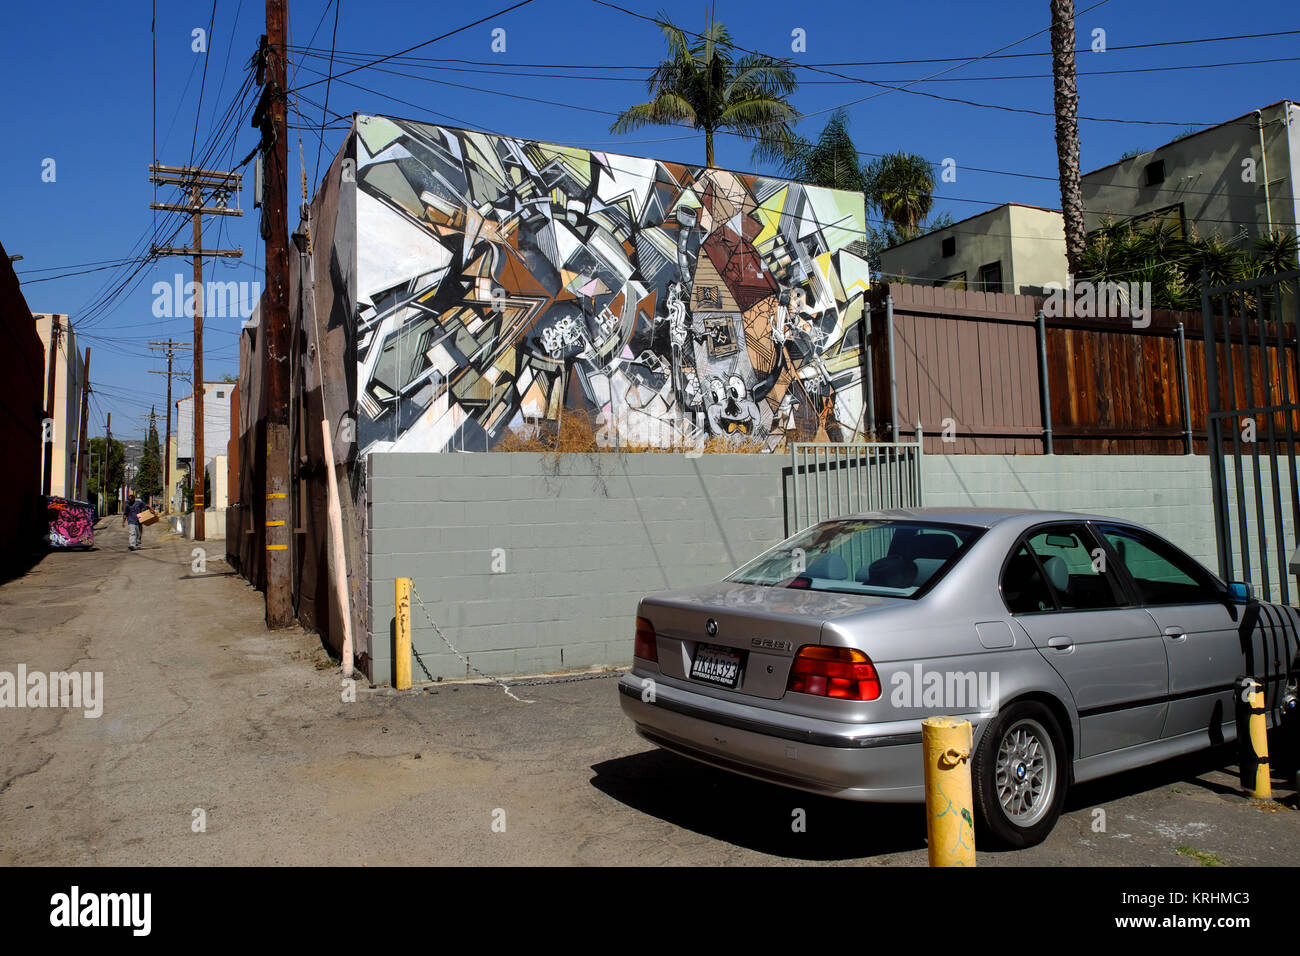 Un abrégé murale sur un mur et voiture garée dans une ruelle dans le quartier de Los Feliz à Los Angeles, Californie USA KATHY DEWITT Banque D'Images